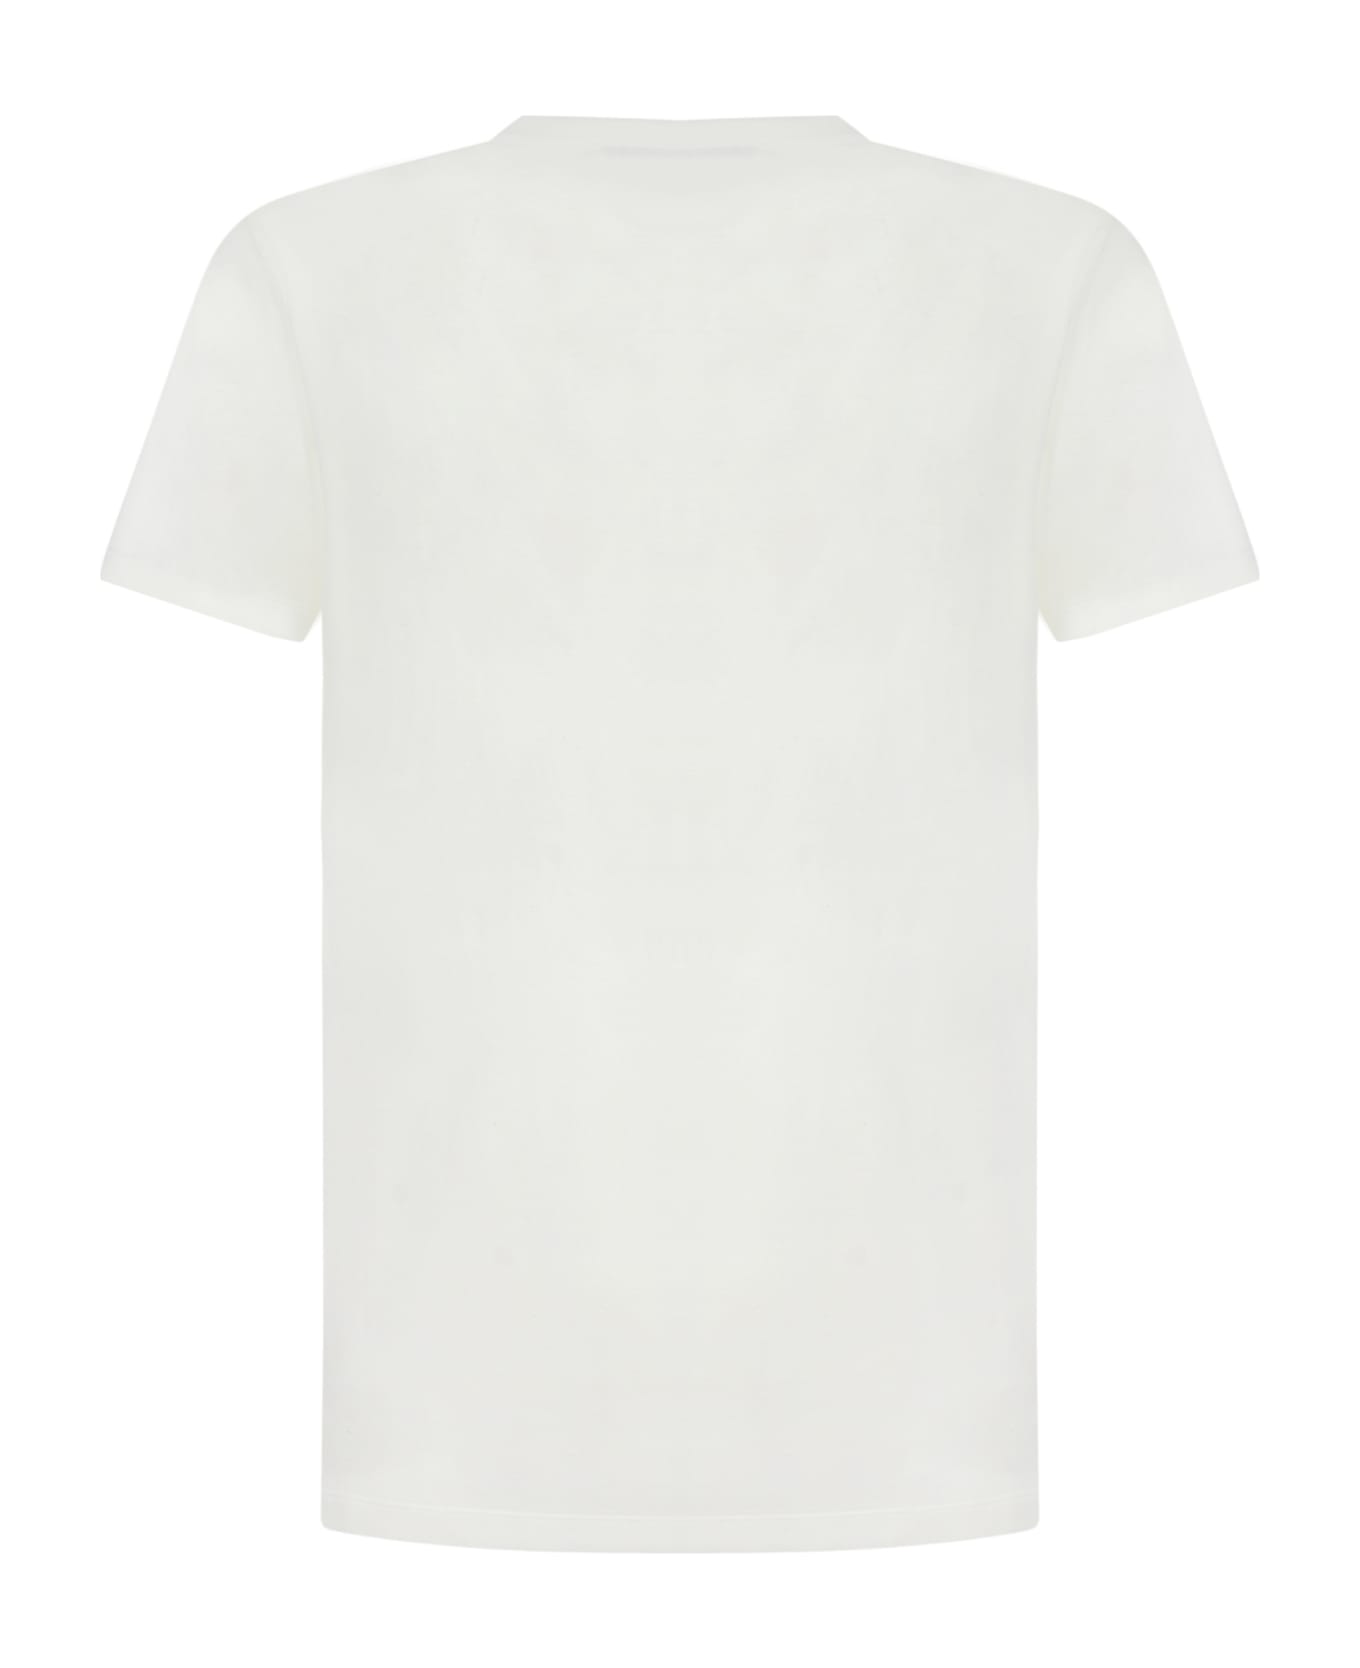 Jil Sander T-shirt - White